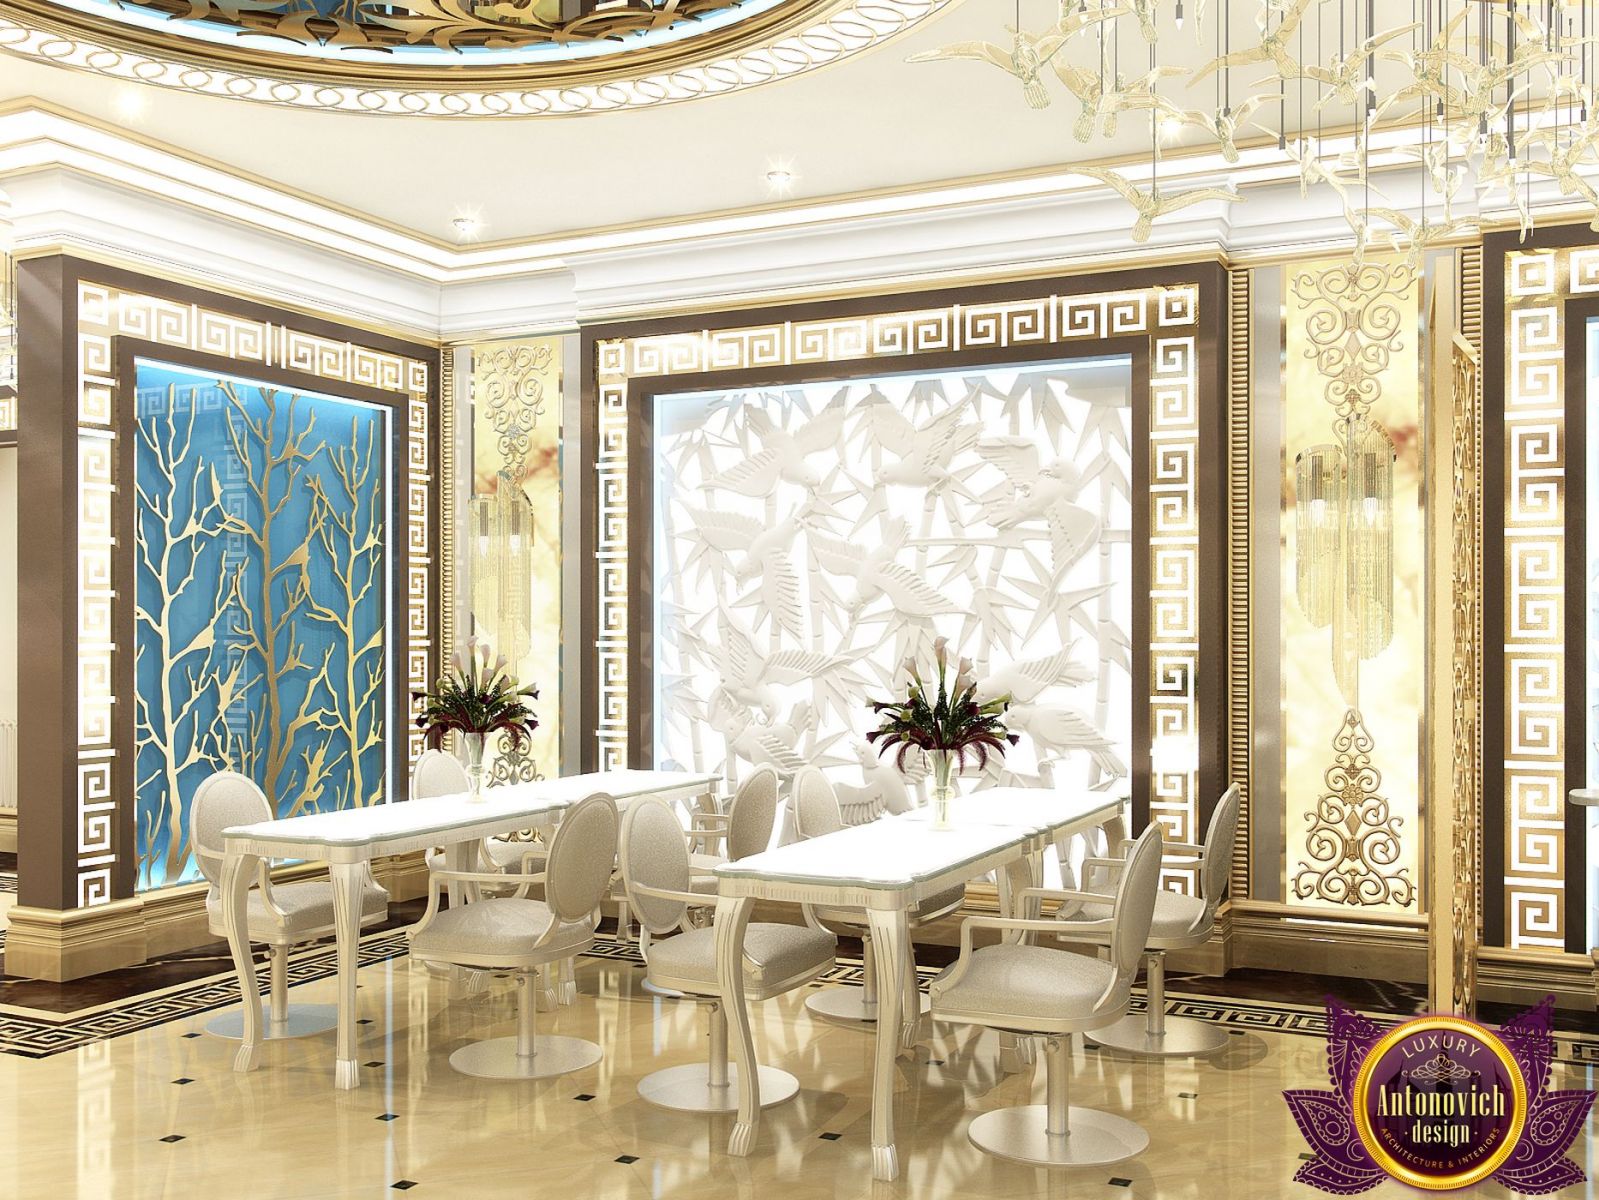 Elegant salon reception area with luxurious design